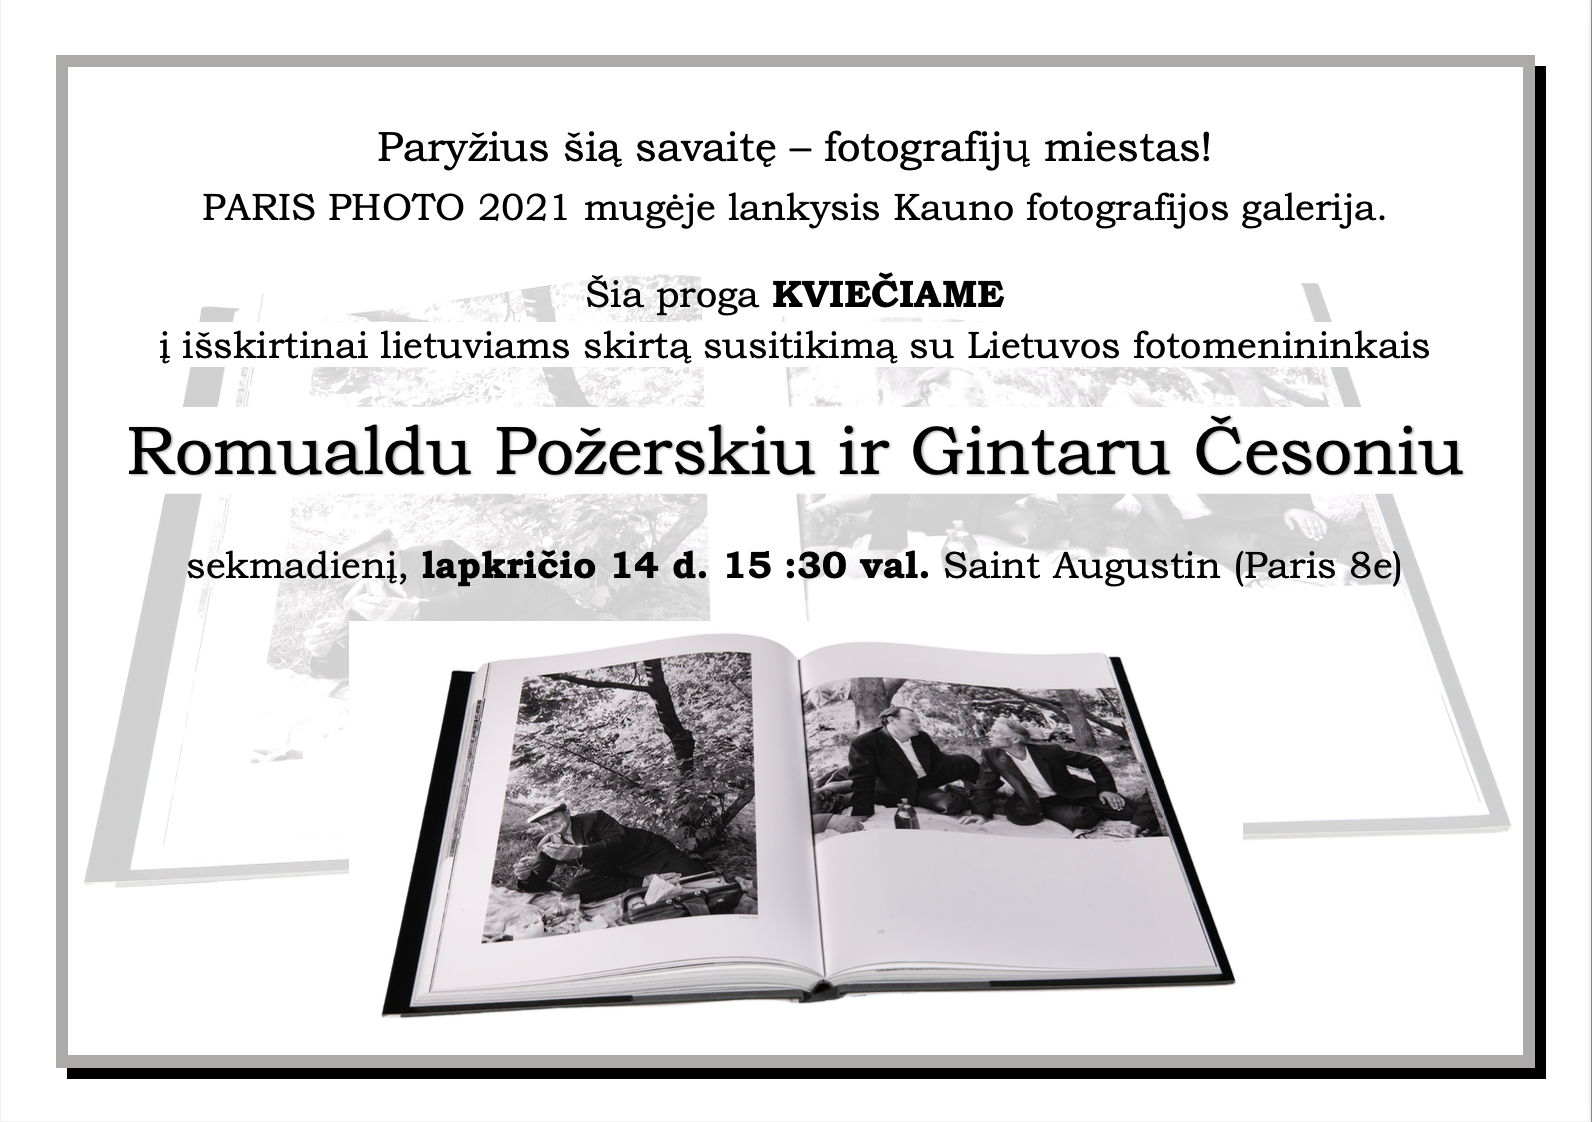 Prancūzijos lietuvių bendruomenės susibūrimas bei susitikimas su Lietuvos fotomenininkais Romualdu Požerskiu ir Gintaru Česoniu